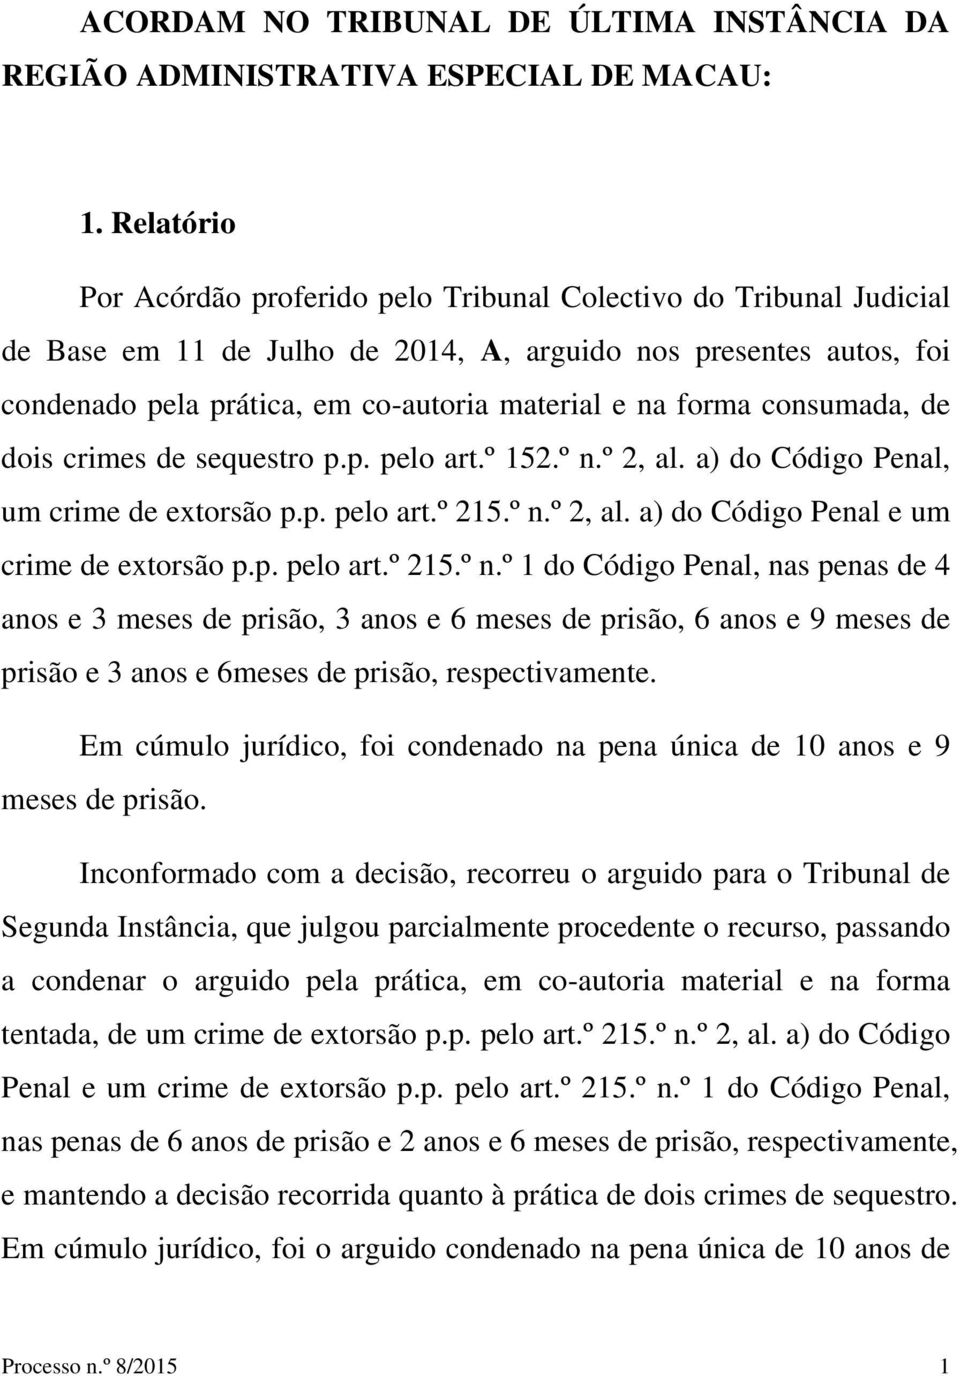 forma consumada, de dois crimes de sequestro p.p. pelo art.º 152.º n.